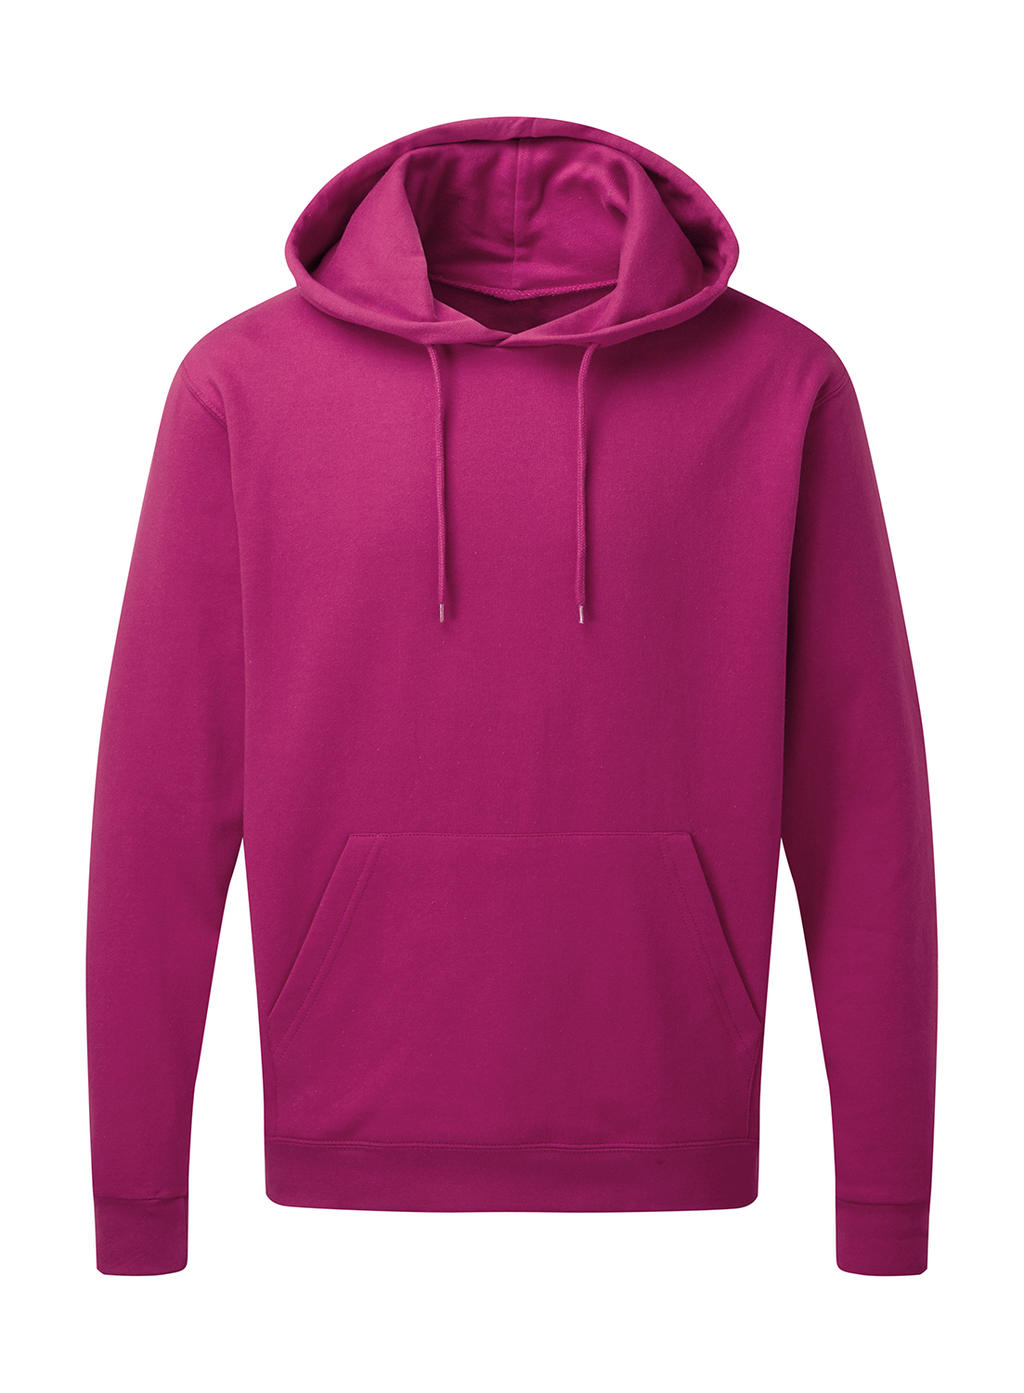  Mens Hooded Sweatshirt in Farbe Dark Pink